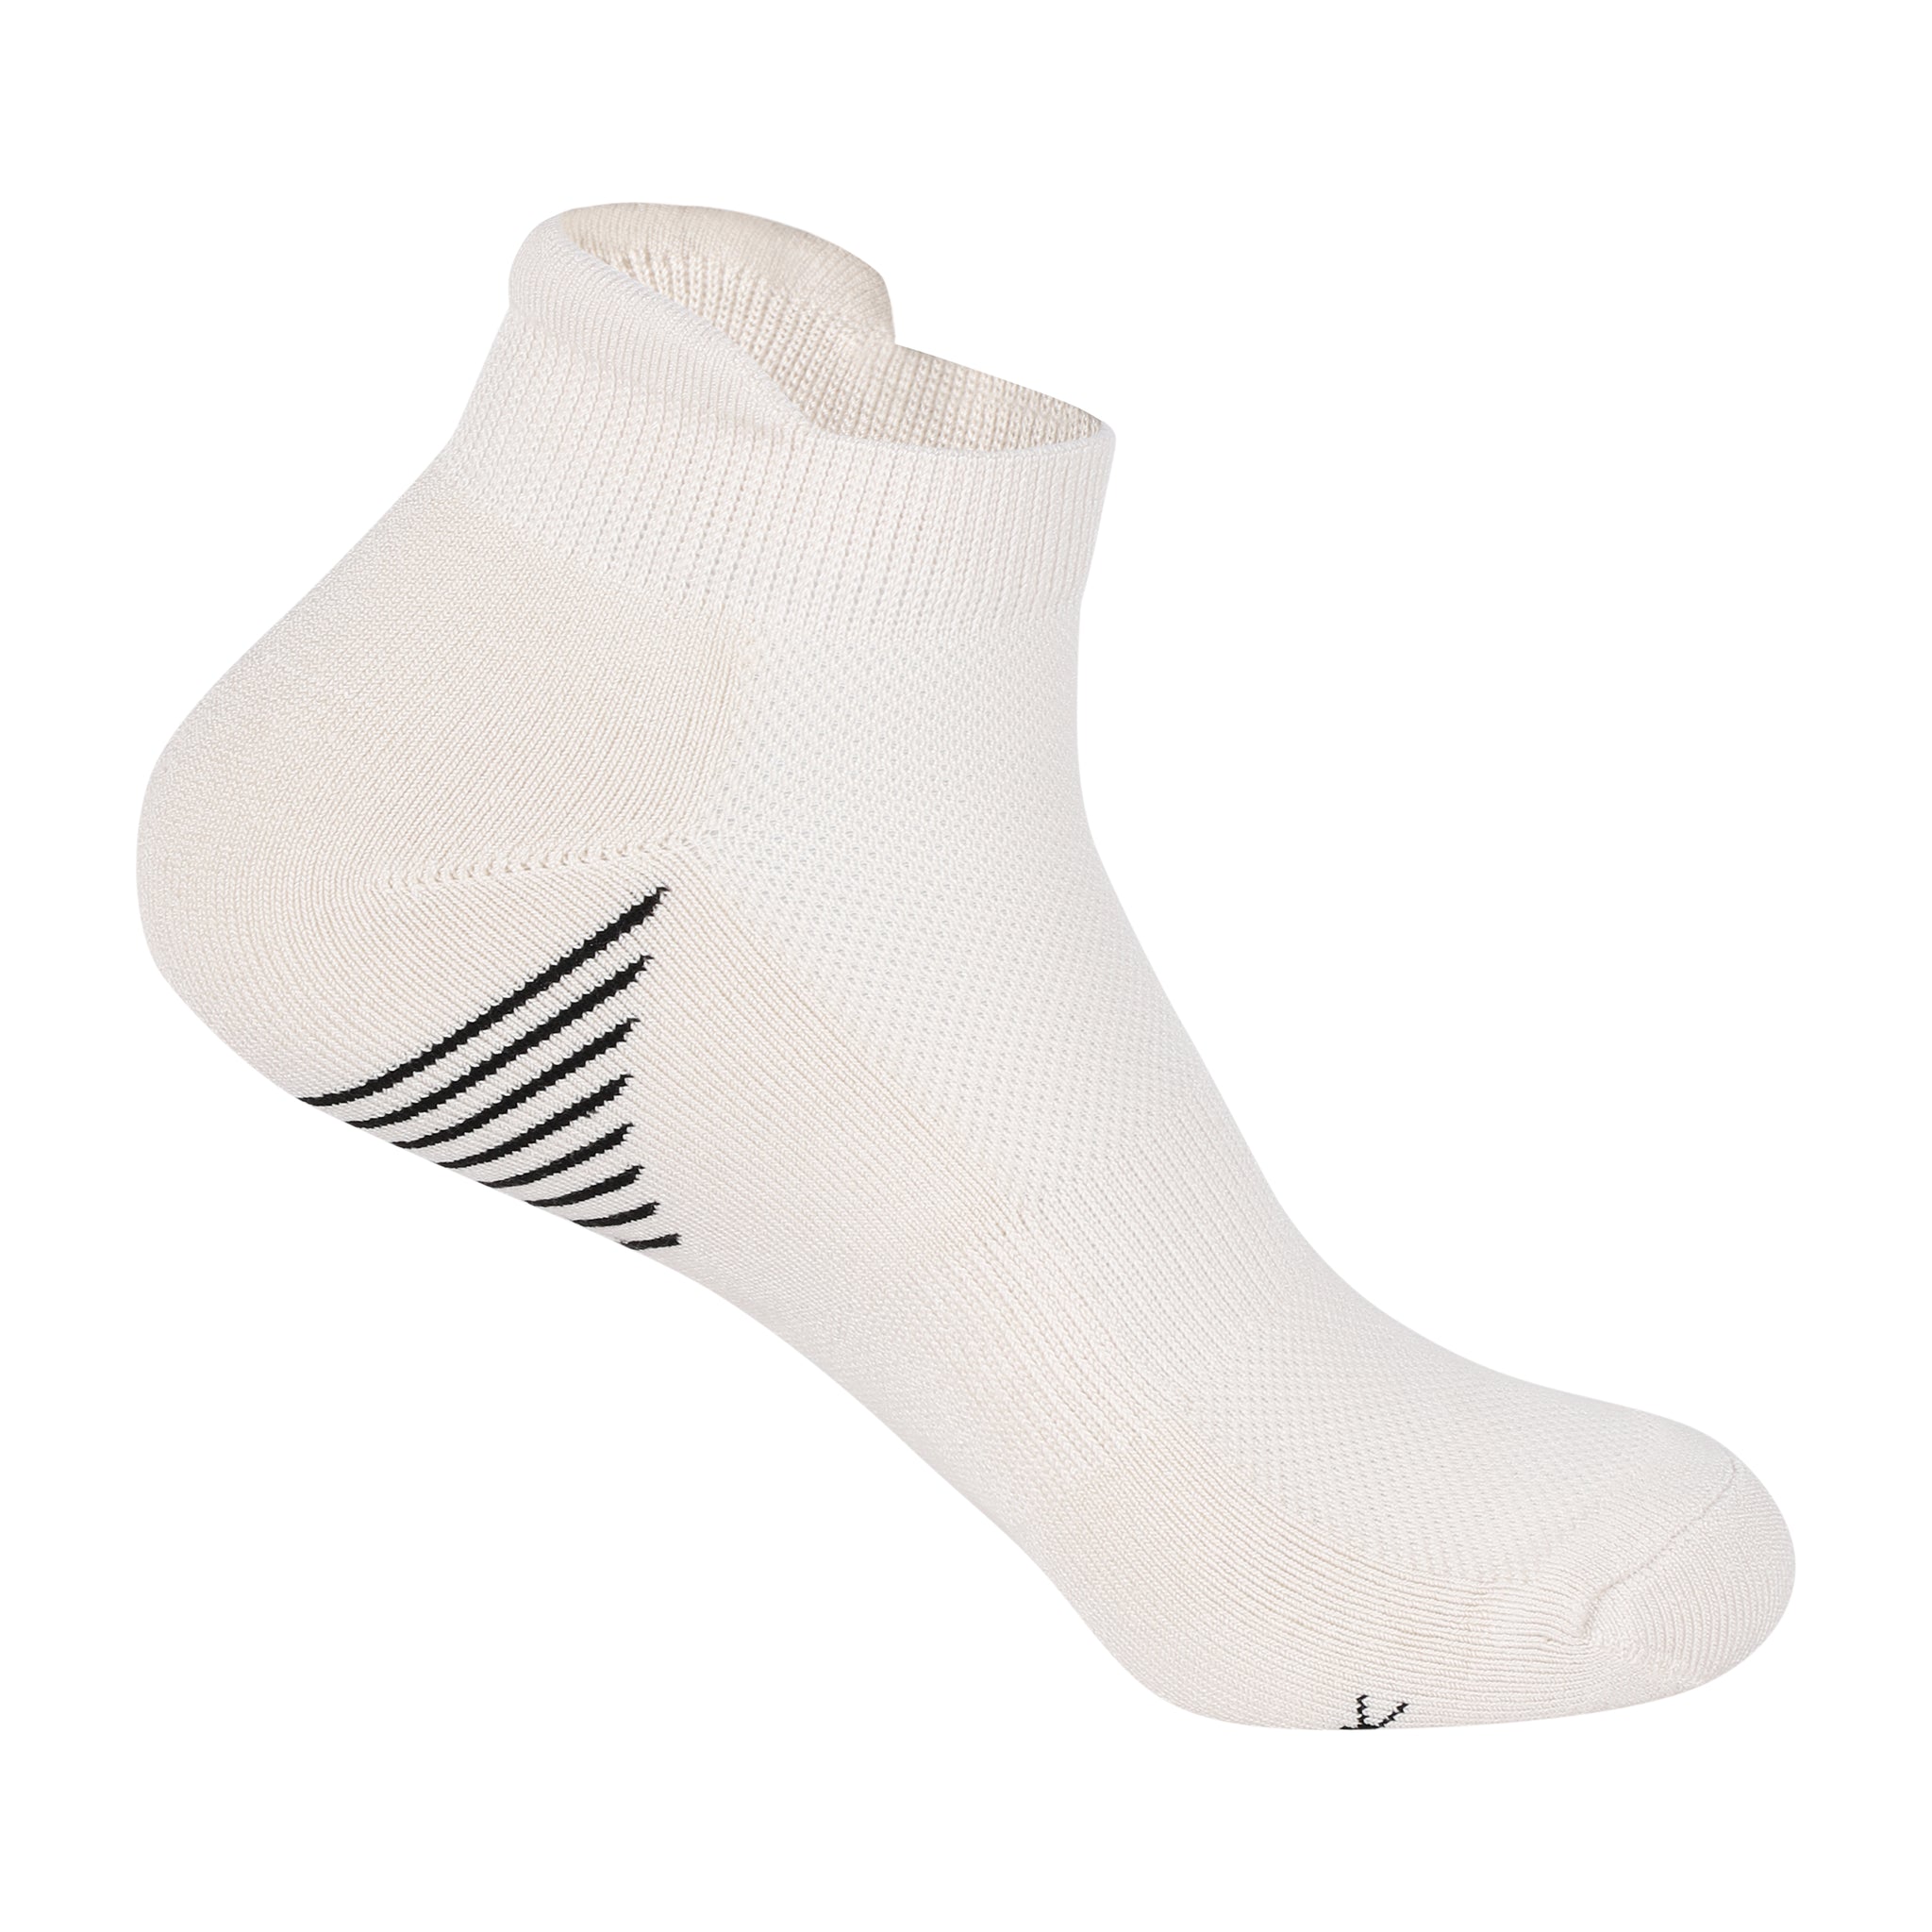 Off White Bamboo Sports Socks For Men